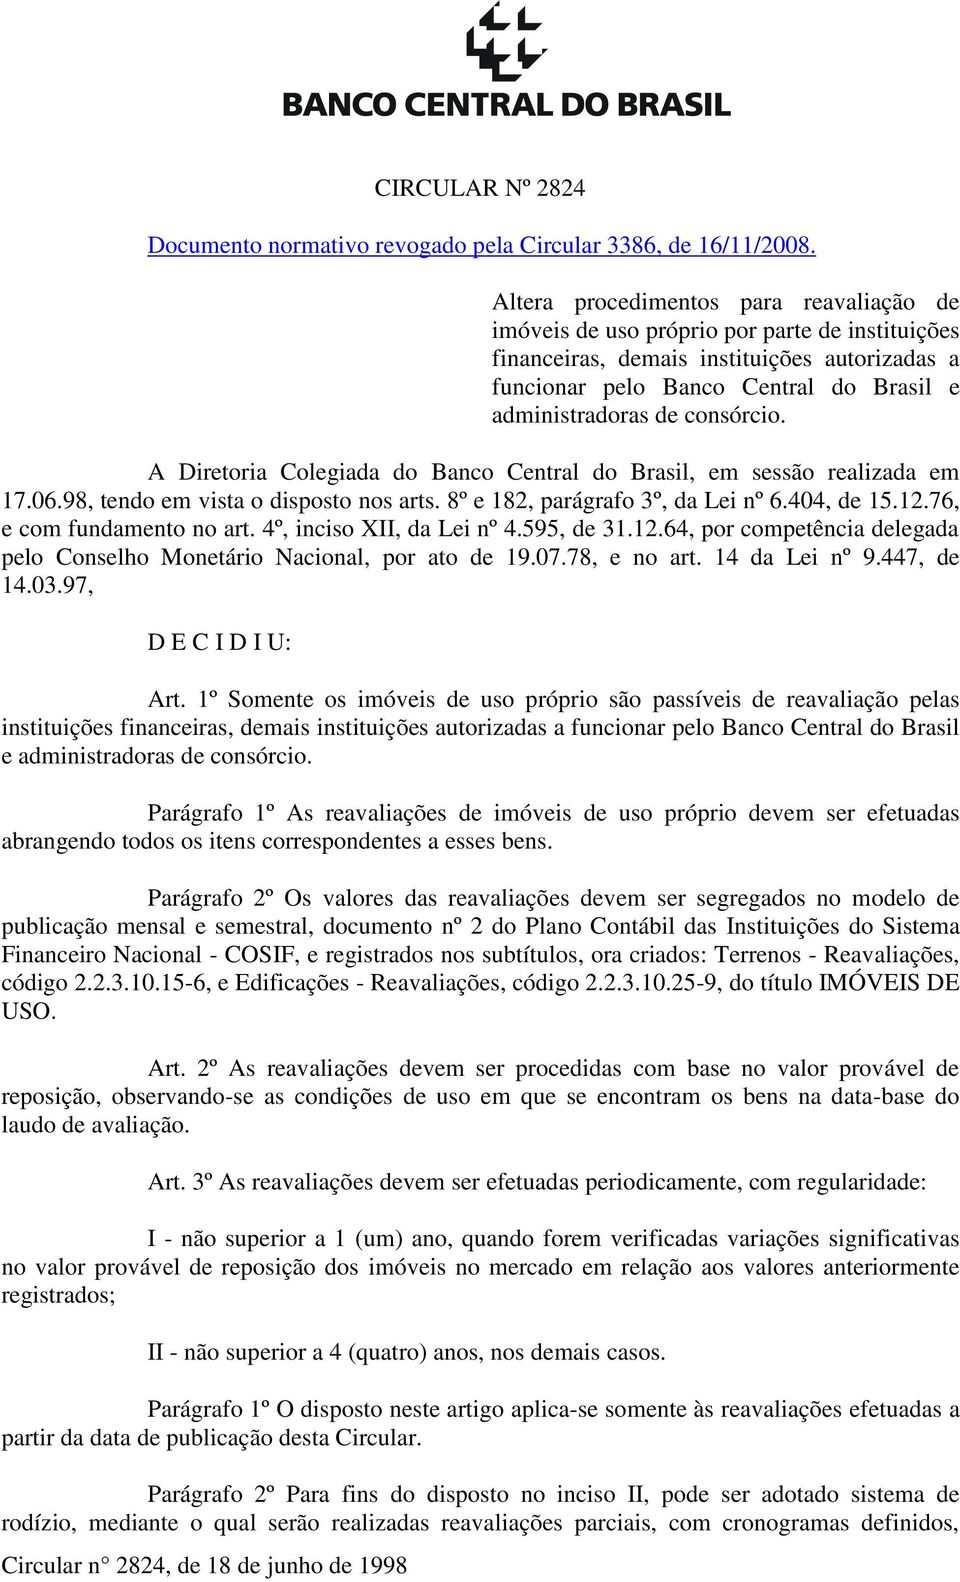 consórcio. A Diretoria Colegiada do Banco Central do Brasil, em sessão realizada em 17.06.98, tendo em vista o disposto nos arts. 8º e 182, parágrafo 3º, da Lei nº 6.404, de 15.12.